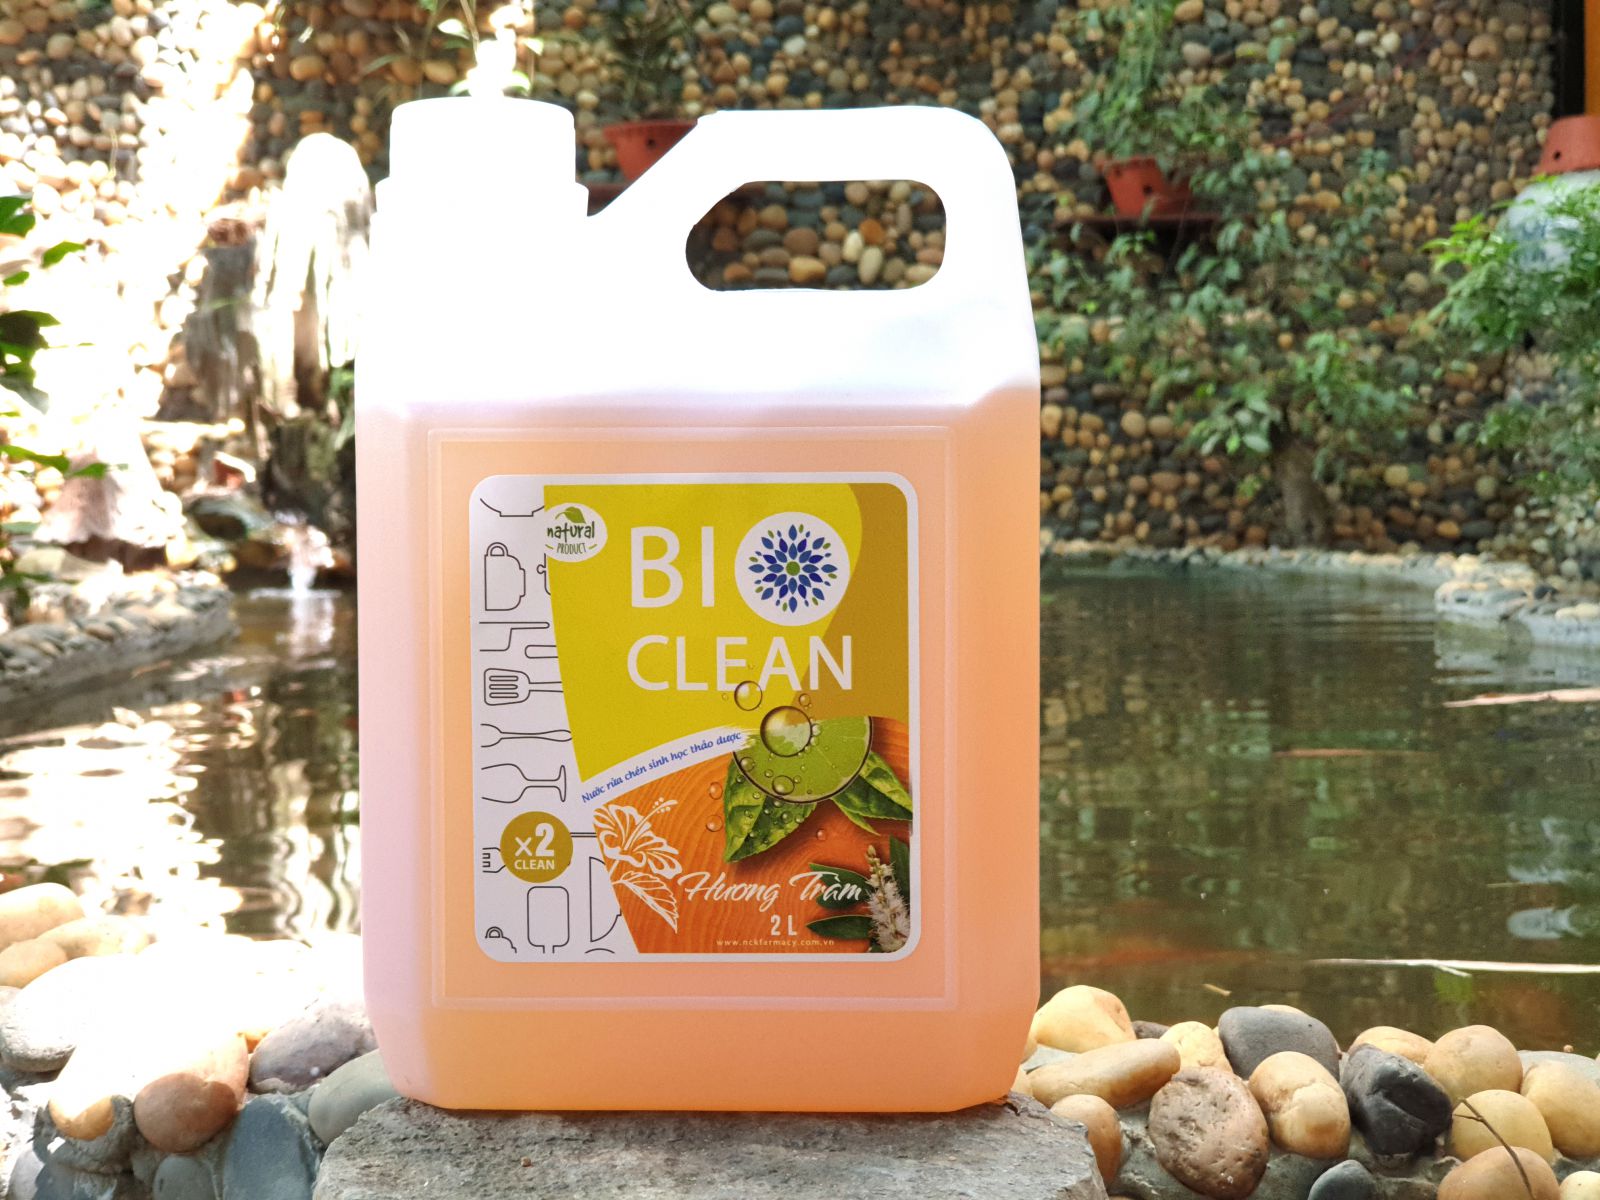 Nước rửa chén sinh học thảo dược BioClean X2, hương tràm, can 2 lít